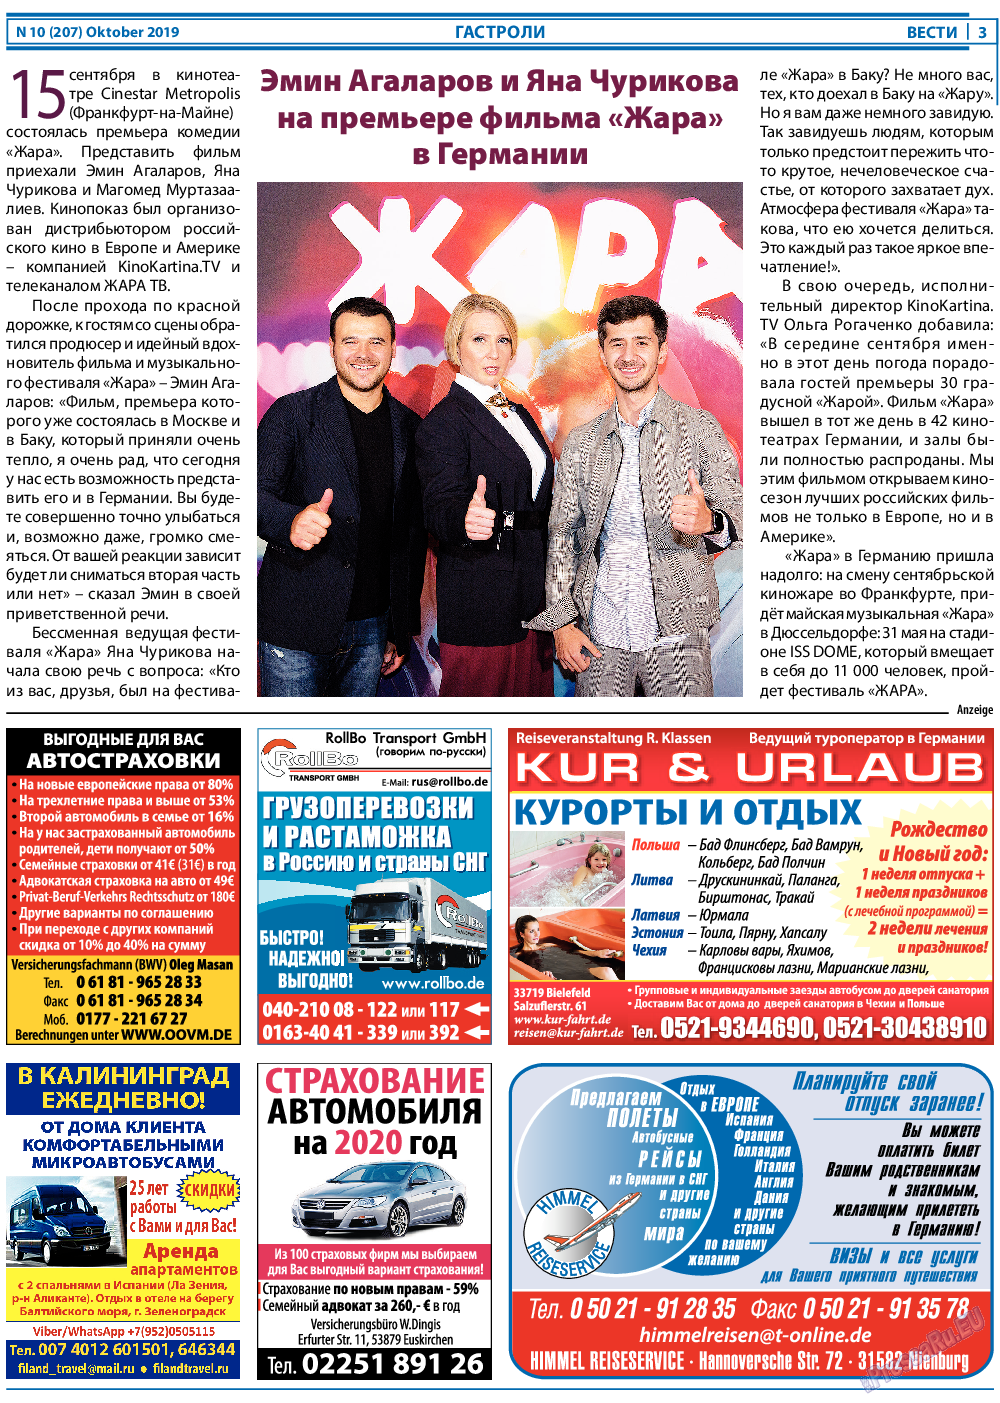 Вести, газета. 2019 №10 стр.3